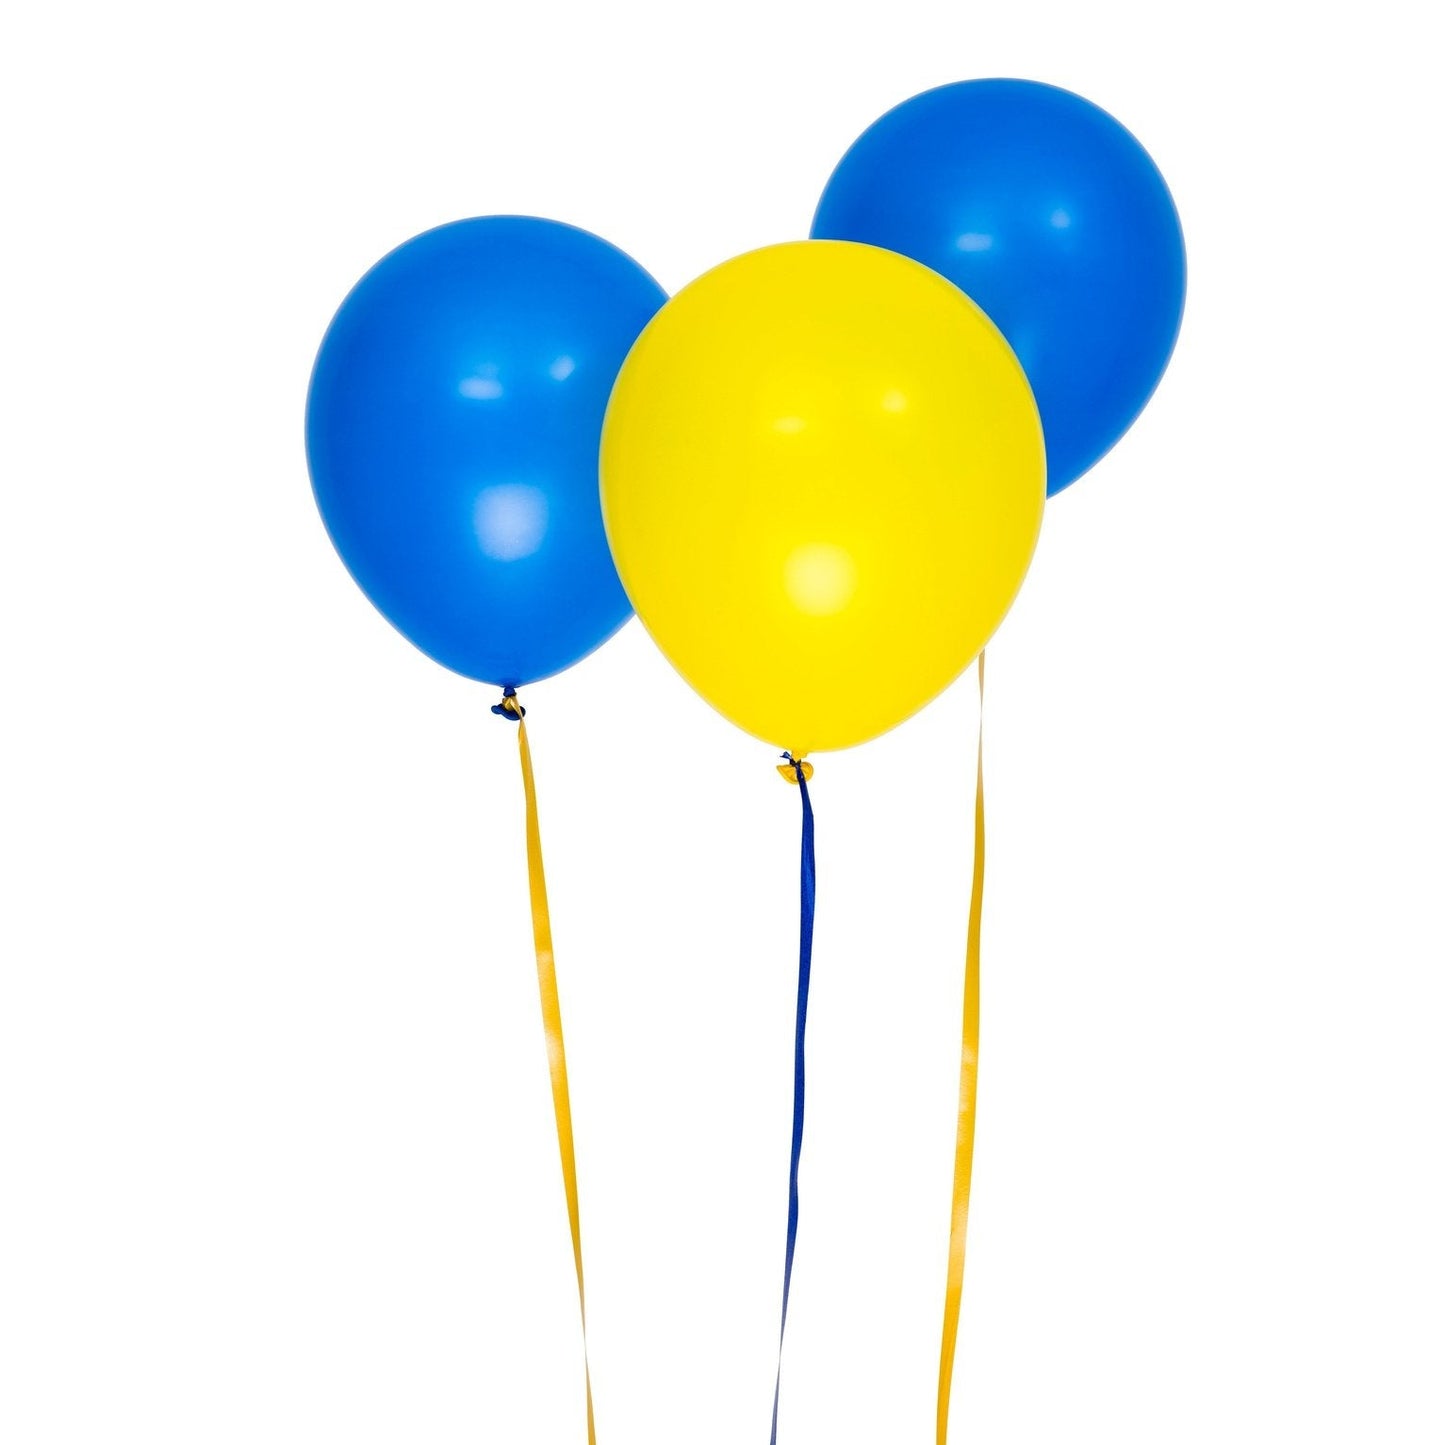 Ballonger 30cm, 10st, blå och gula sorterade. DesignHouse95 - Ballonggrossist - Designhouse95 - Grossist Ballonger - Snabba Leveranser - Engångsartiklar, Student, Jul, Nyår, Fest, Kalas